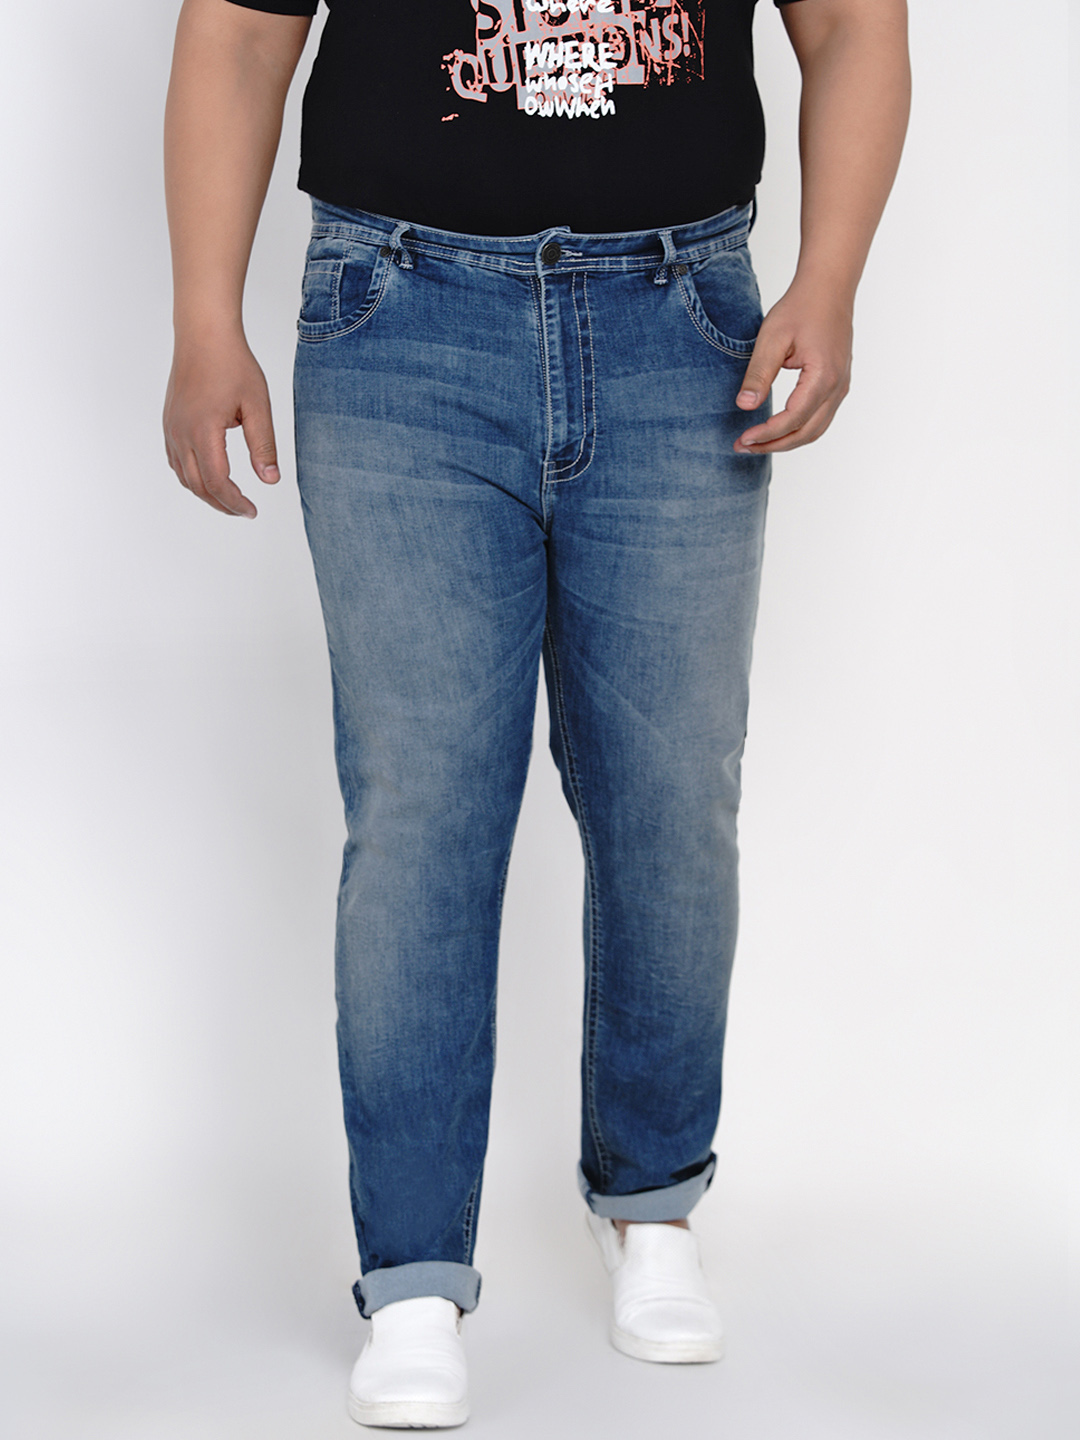 bottomwear/jeans/JPJ12117/jpj12117-1.jpg